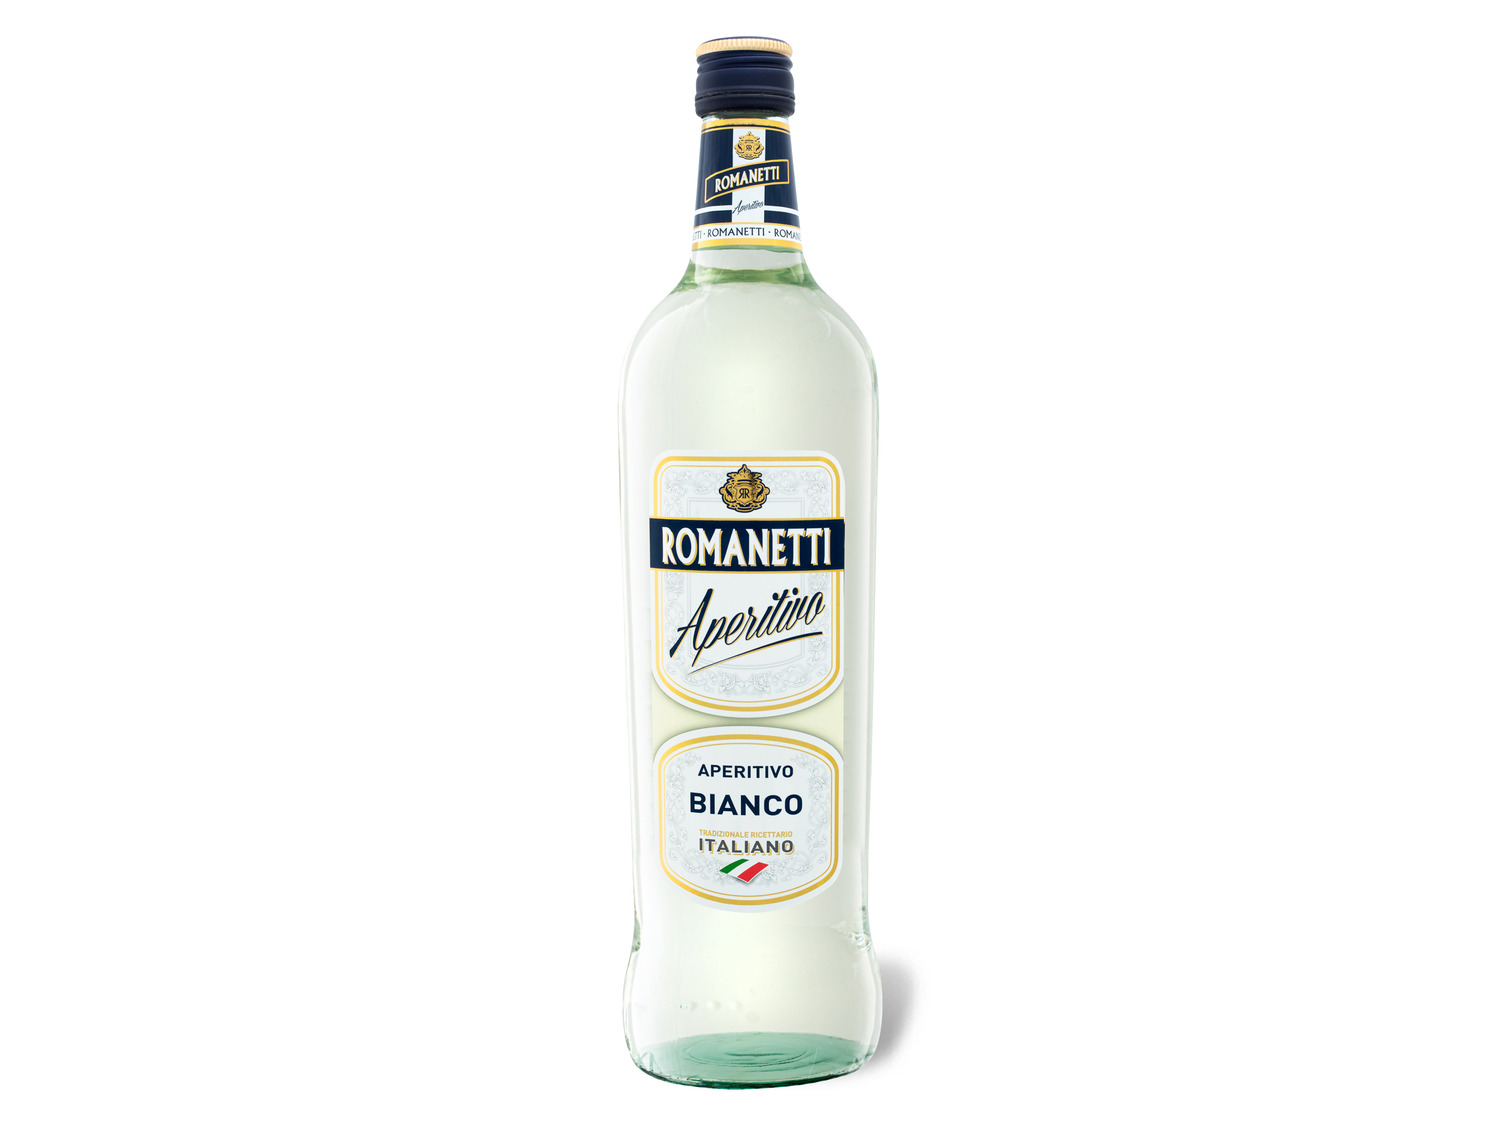 ROMANETTI Aperitivo Bianco 14 4 % Vol Aromatisiertes weinhaltiges Getränk